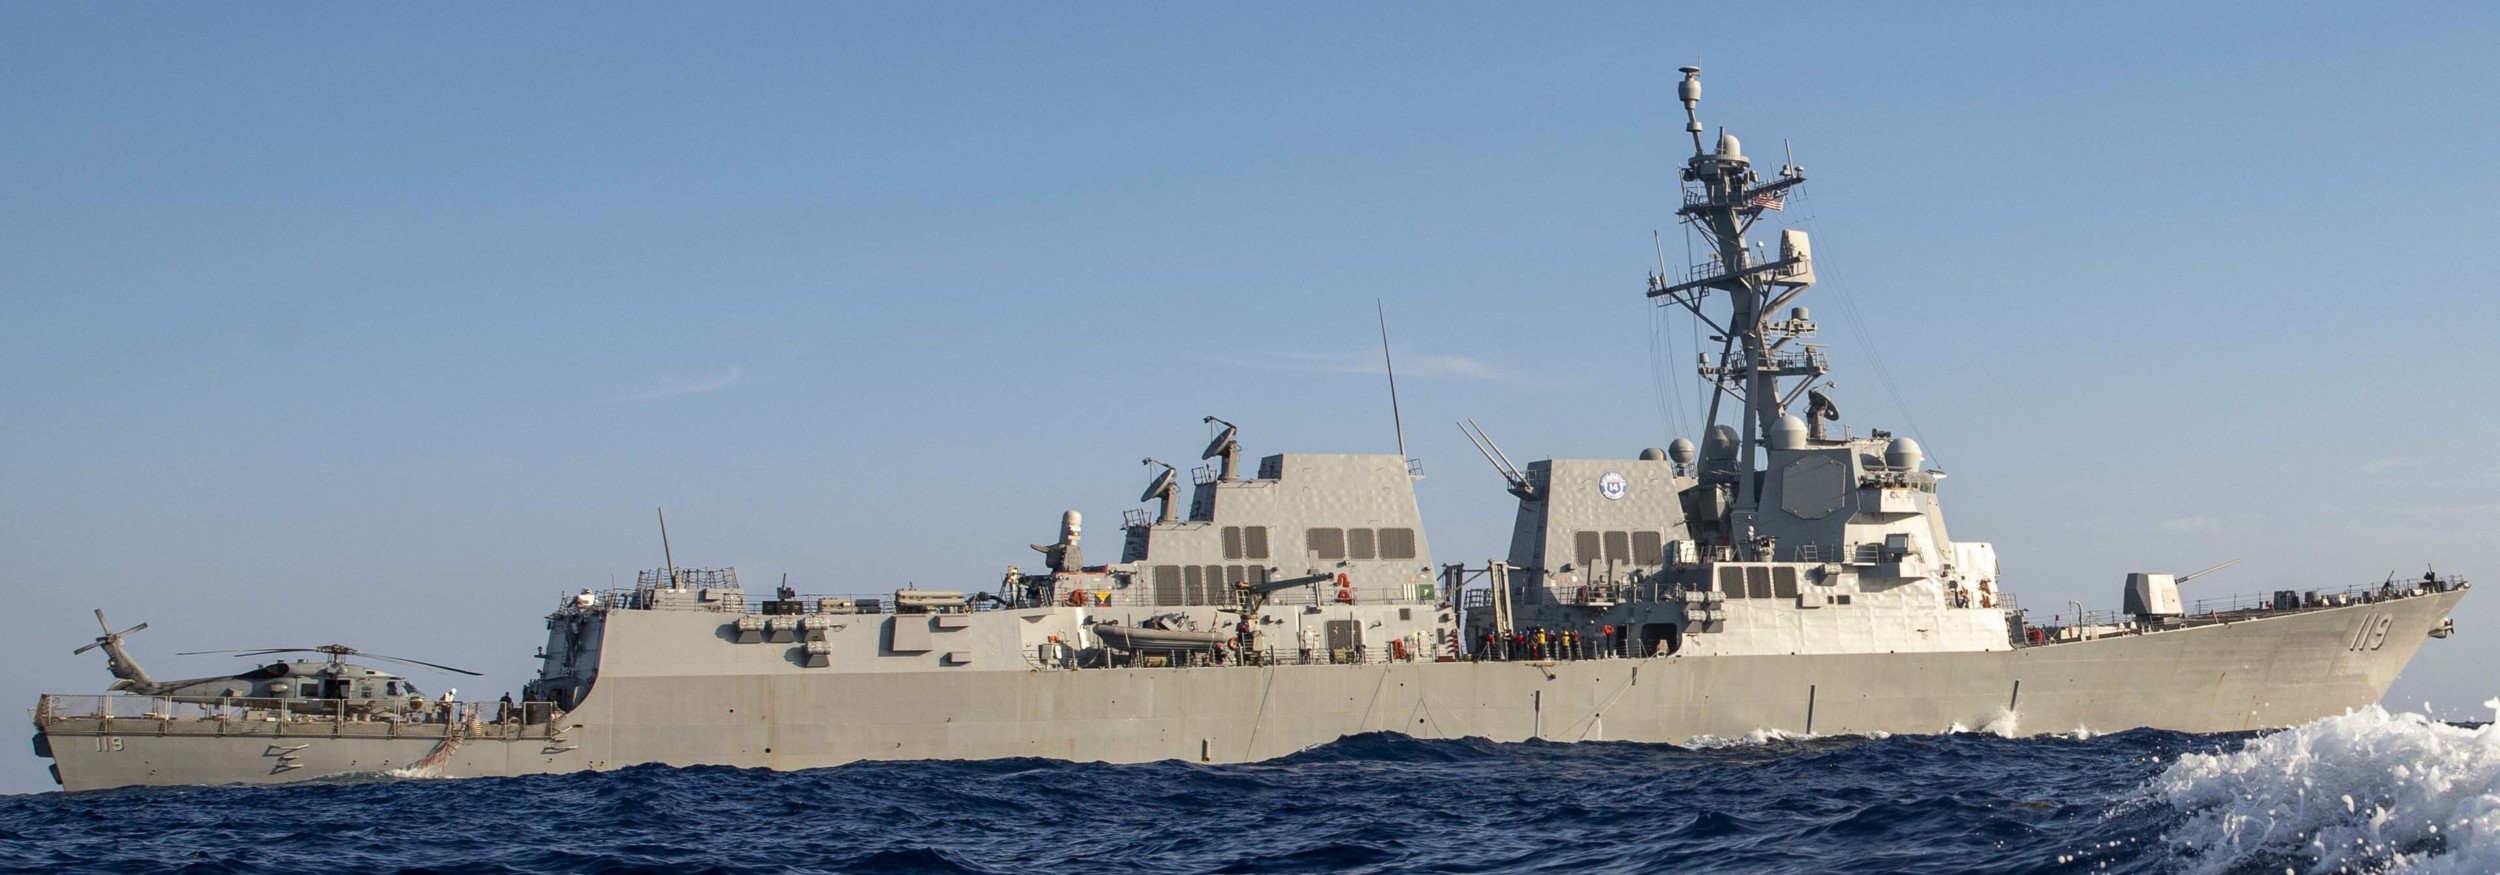 ddg-119 uss delbert d. black arleigh burke class guided missile destroyer aegis us navy atlantic ocean 20